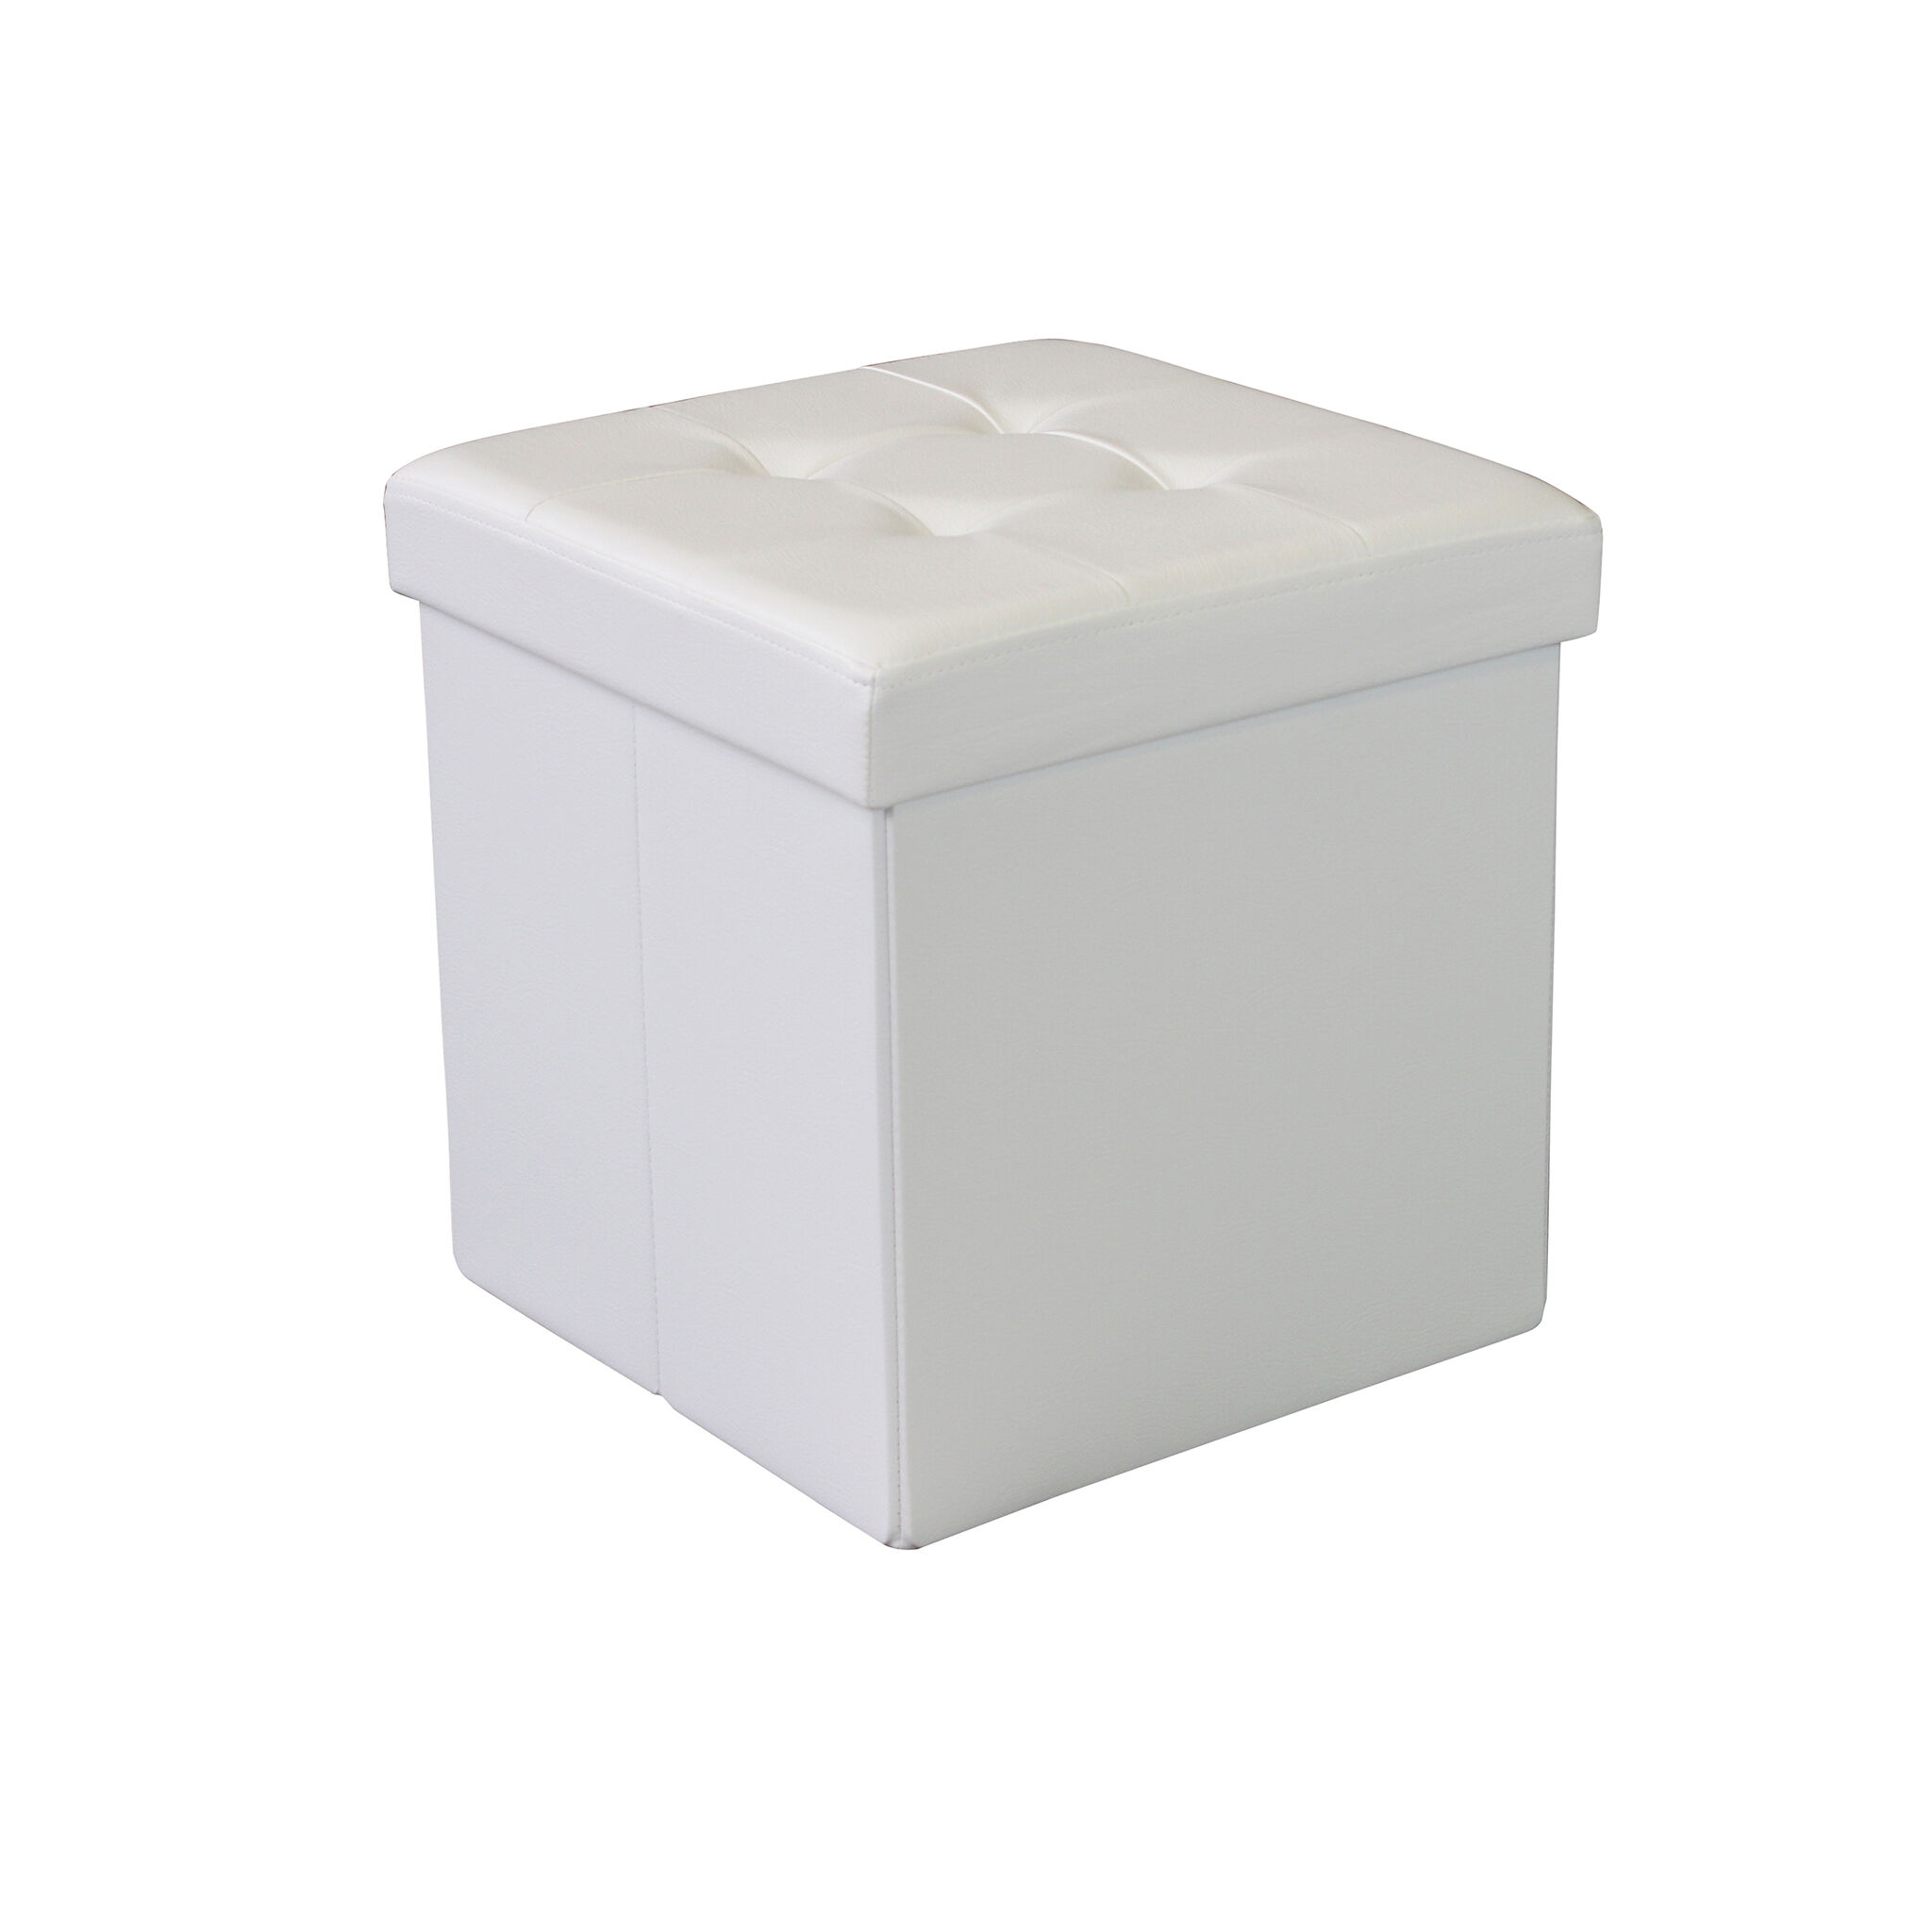 Milani Home pouf quadrato in ecopelle di design moderno, cm 38 x 38 x 38 h Bianco 38 x 38 x 38 cm